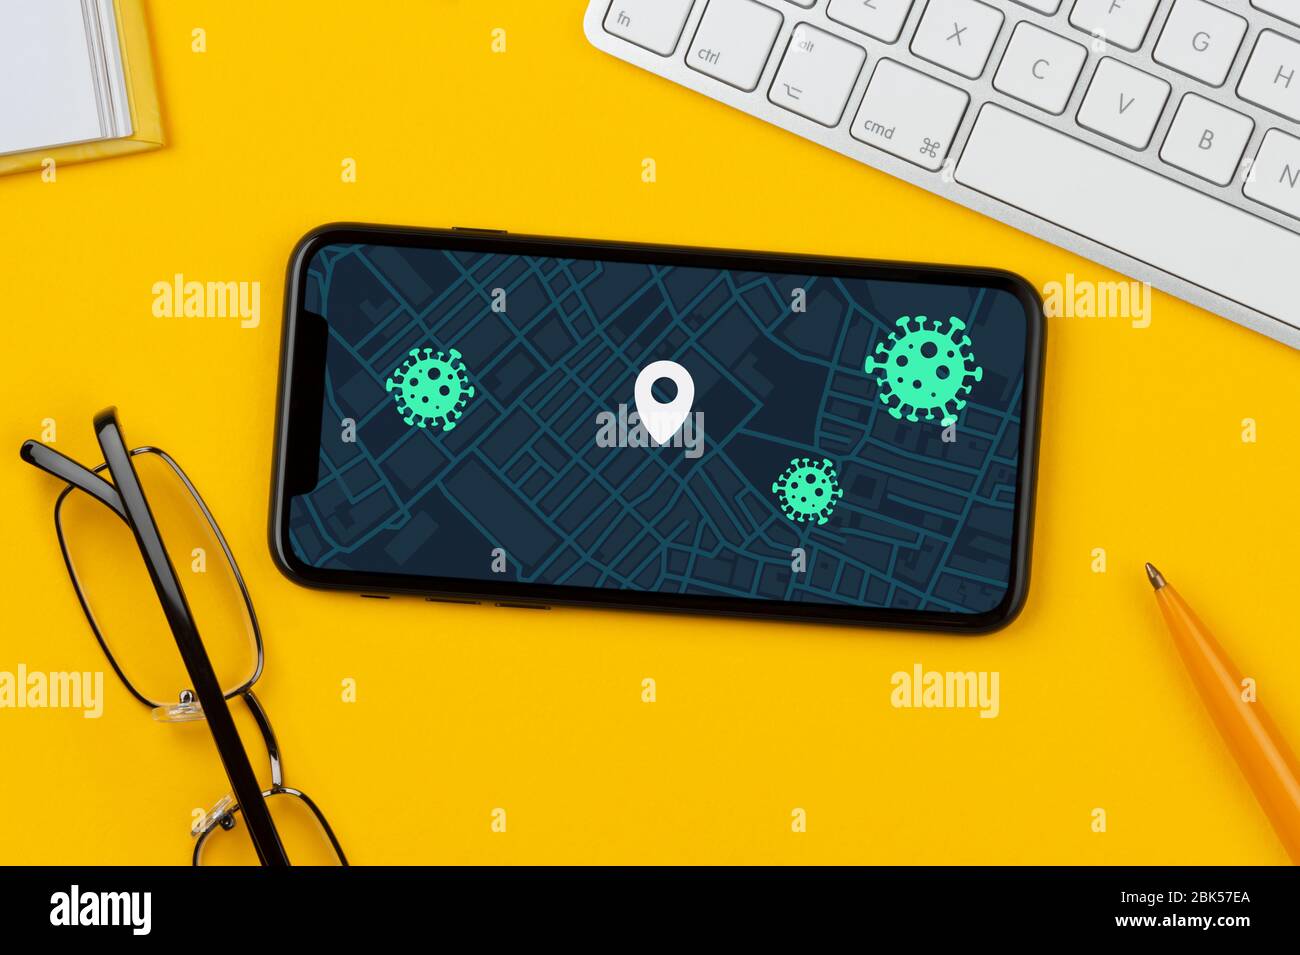 Un smartphone affichant une application de traçage de contacts fictive Covid-19 en cours d'utilisation repose sur un fond jaune, ainsi qu'un clavier, des lunettes, un stylo et un livre. Banque D'Images